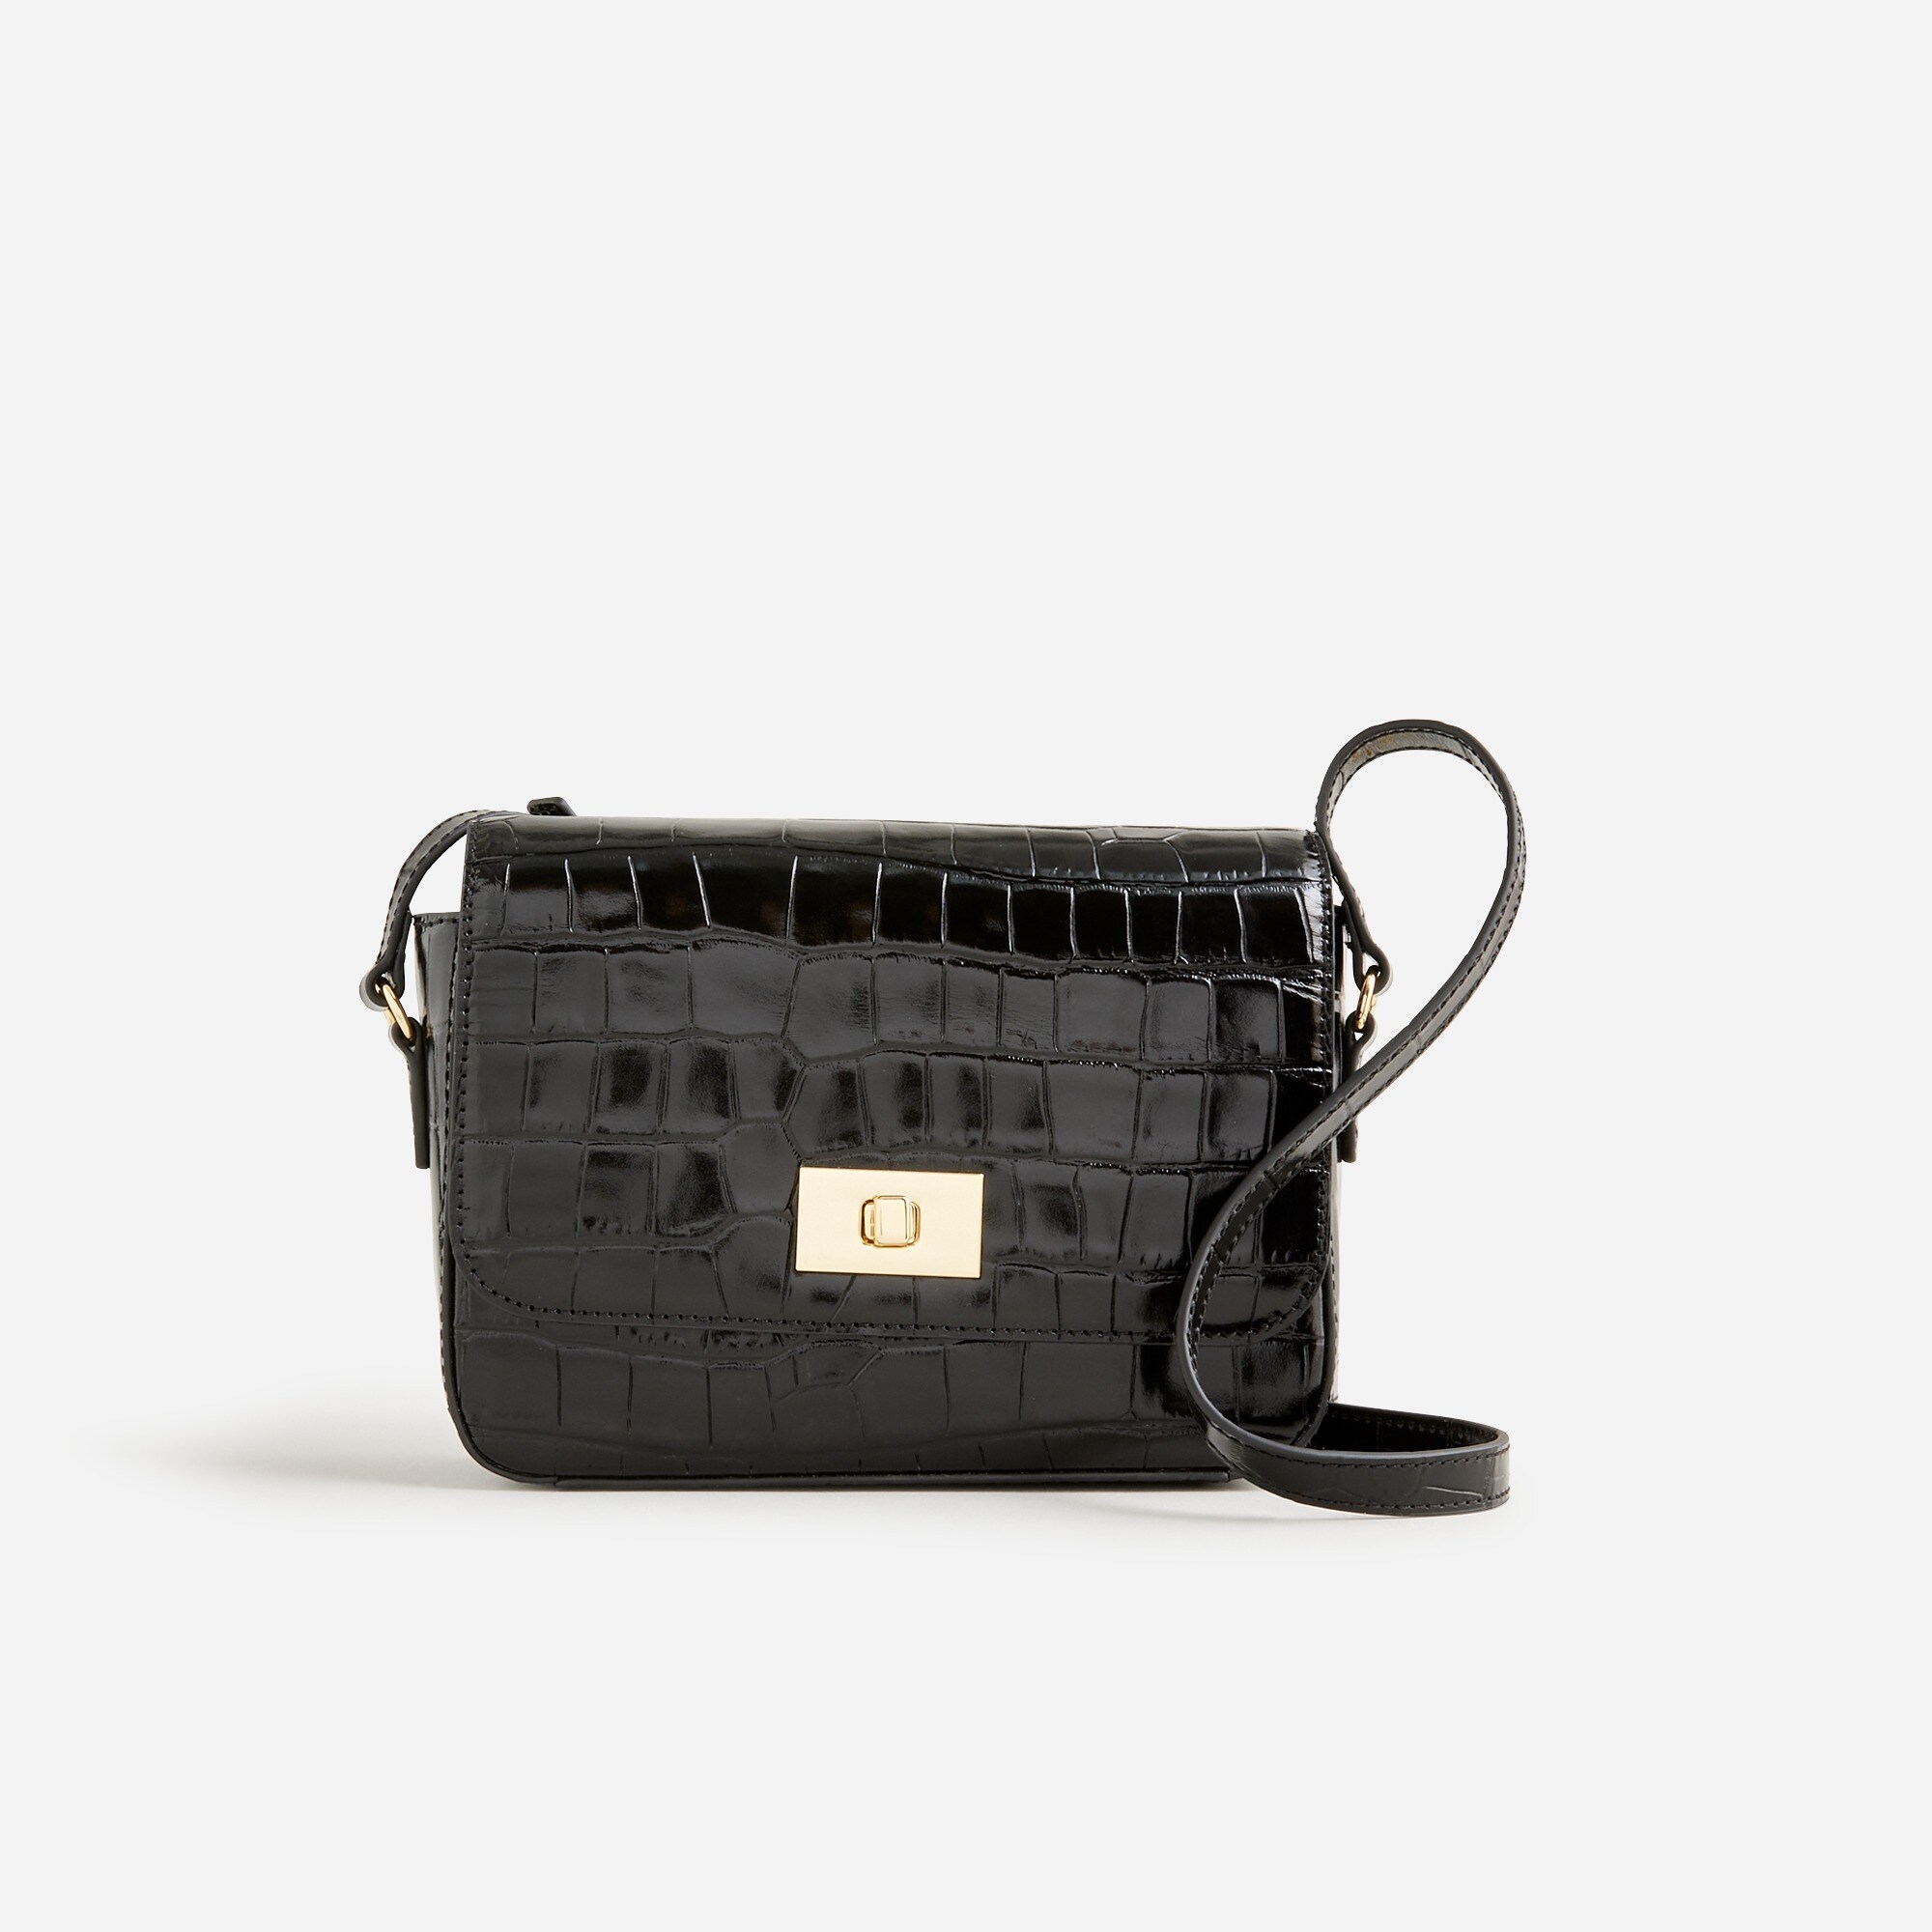  Edie crossbody bag in Italian croc-embossed leather